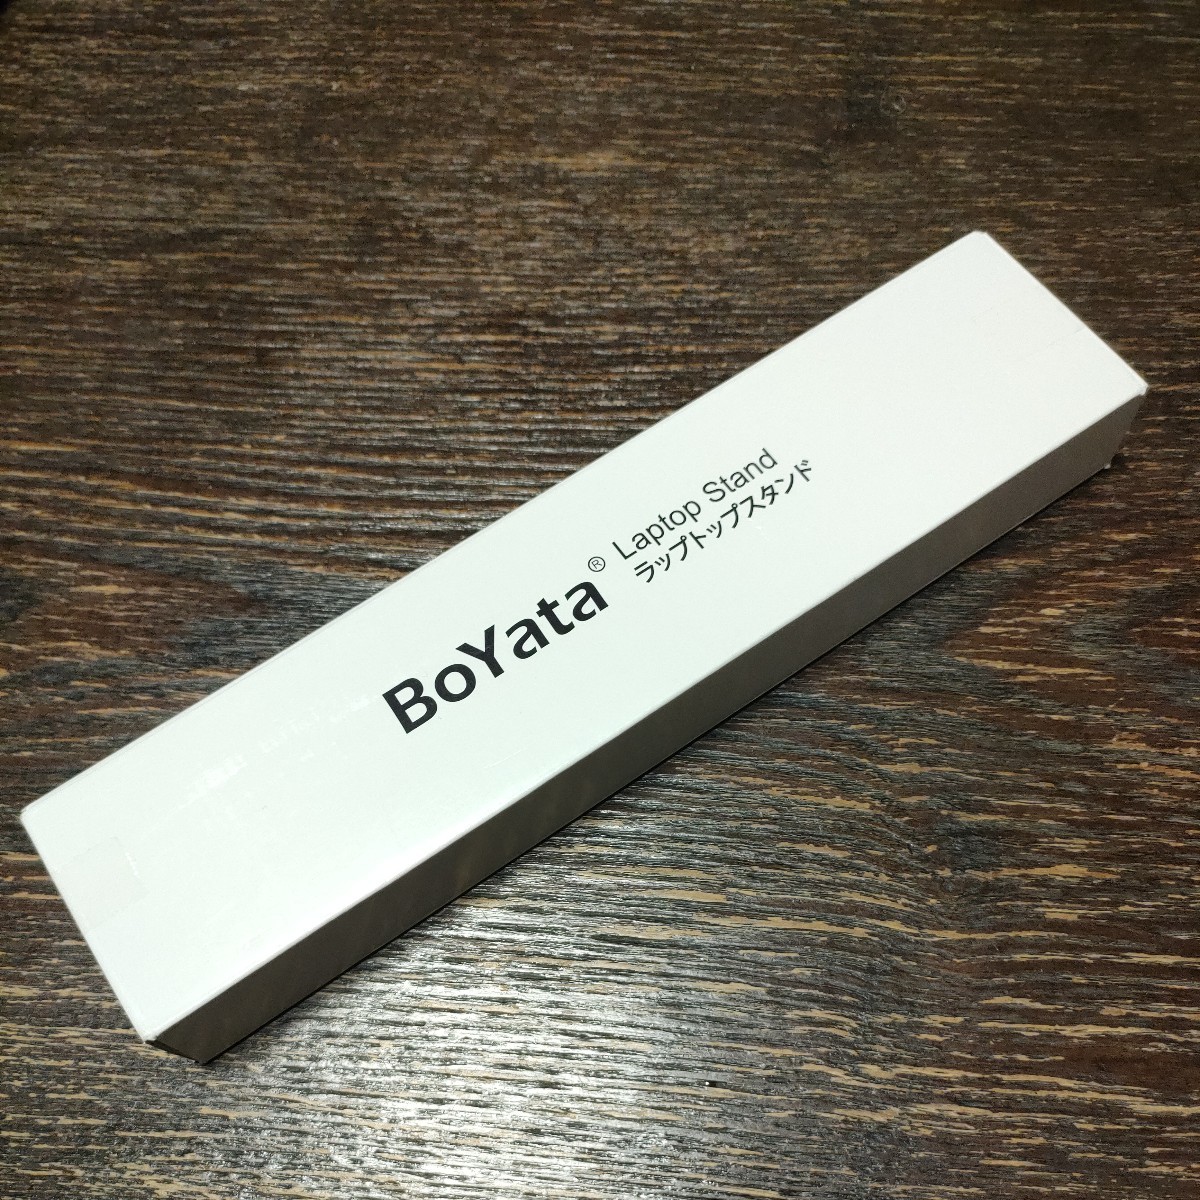 【未開封未使用品】BoYata ノートパソコンスタンド iPadスタンド 折りたたみ式 ラップトップスタンド 6段階調節可能 アルミ合金製 シルバー_画像8